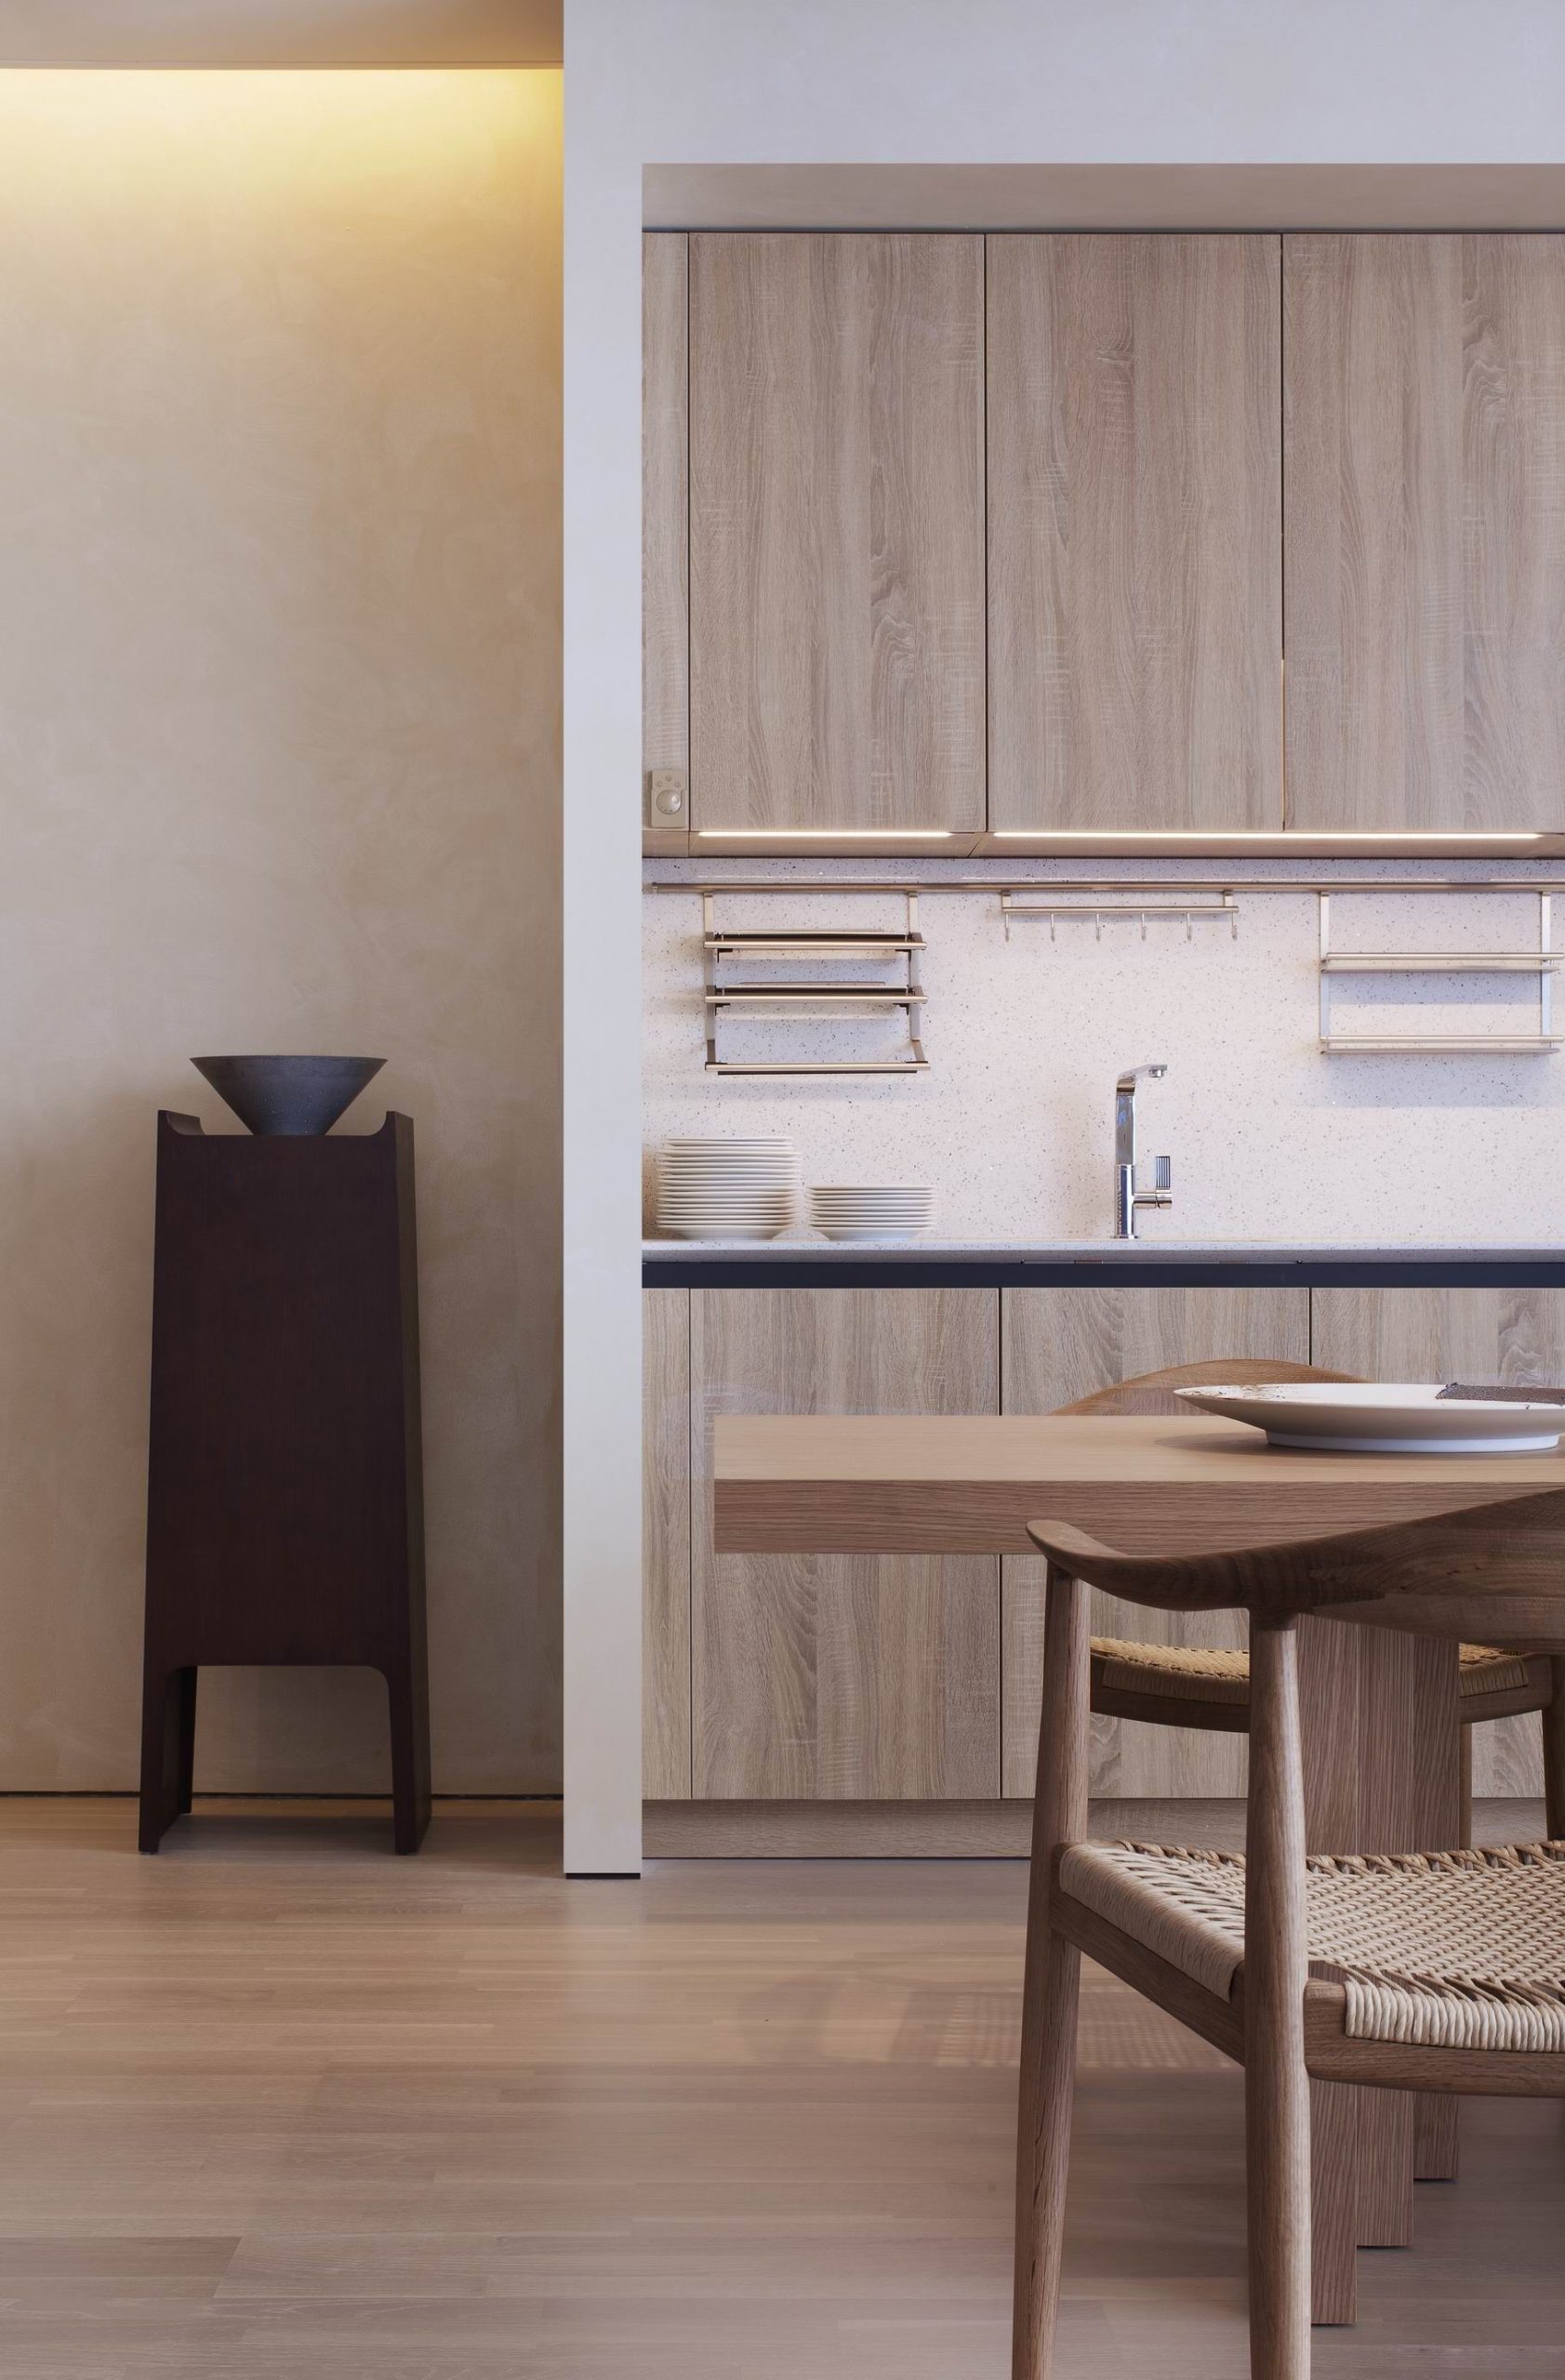 Công ty nội thất Inest thiết kế căn hộ với phong cách tối giản 